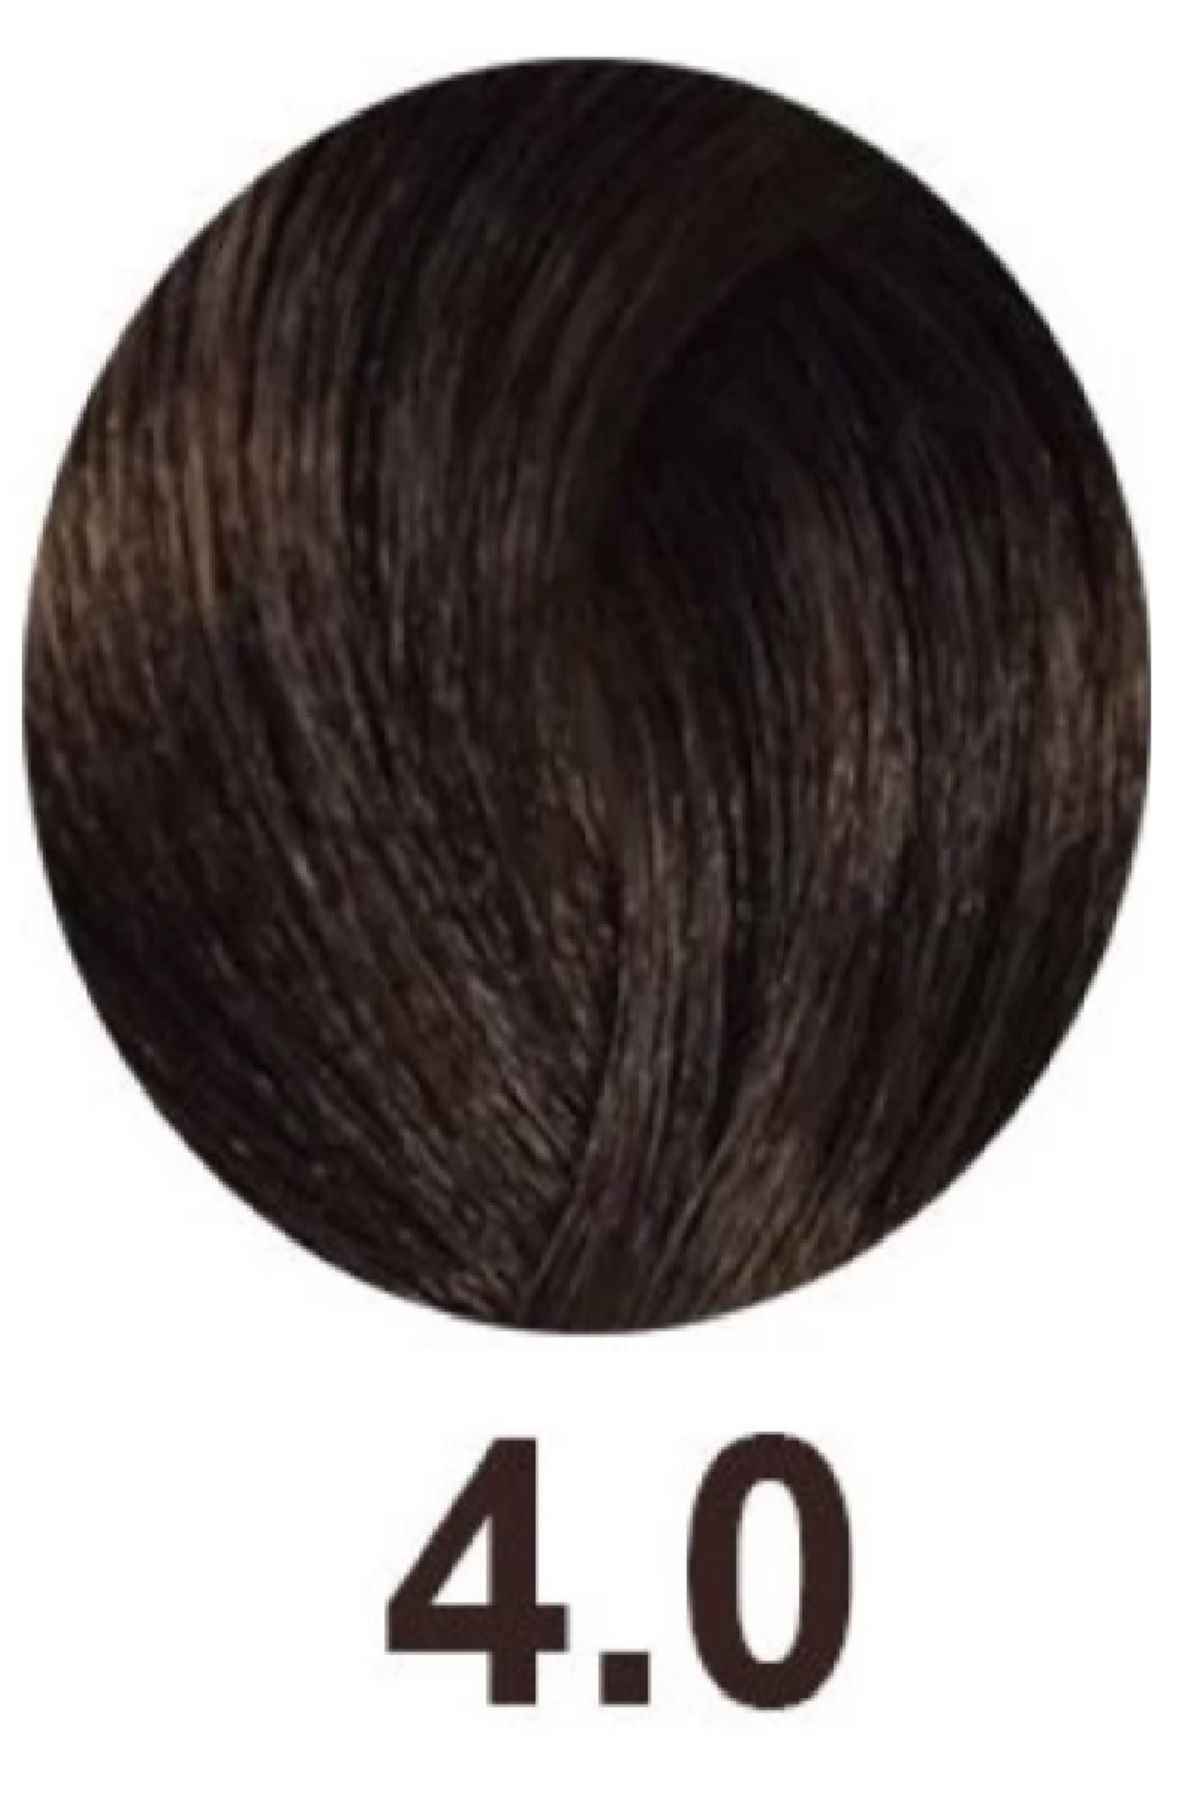 İNOA Inoa Antioksidan Saç Boyası 4.0 Yoğun Kahve 60 gr. BSecrets.Y11